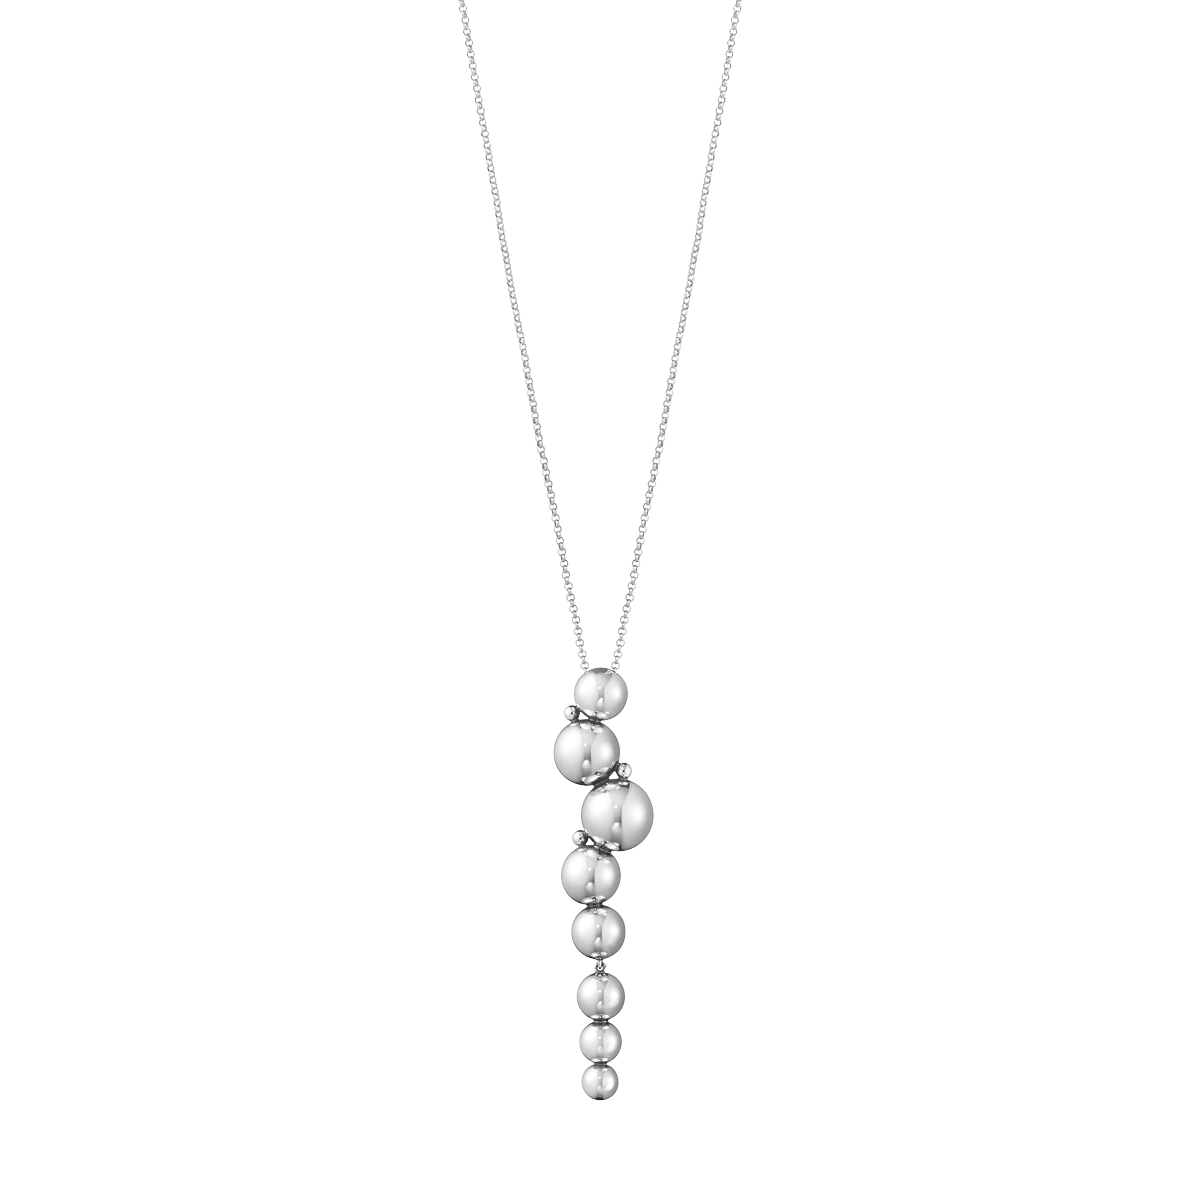 Moonlight Grapes halskæde med vedhæng - oxideret sølv fra Georg Jensen